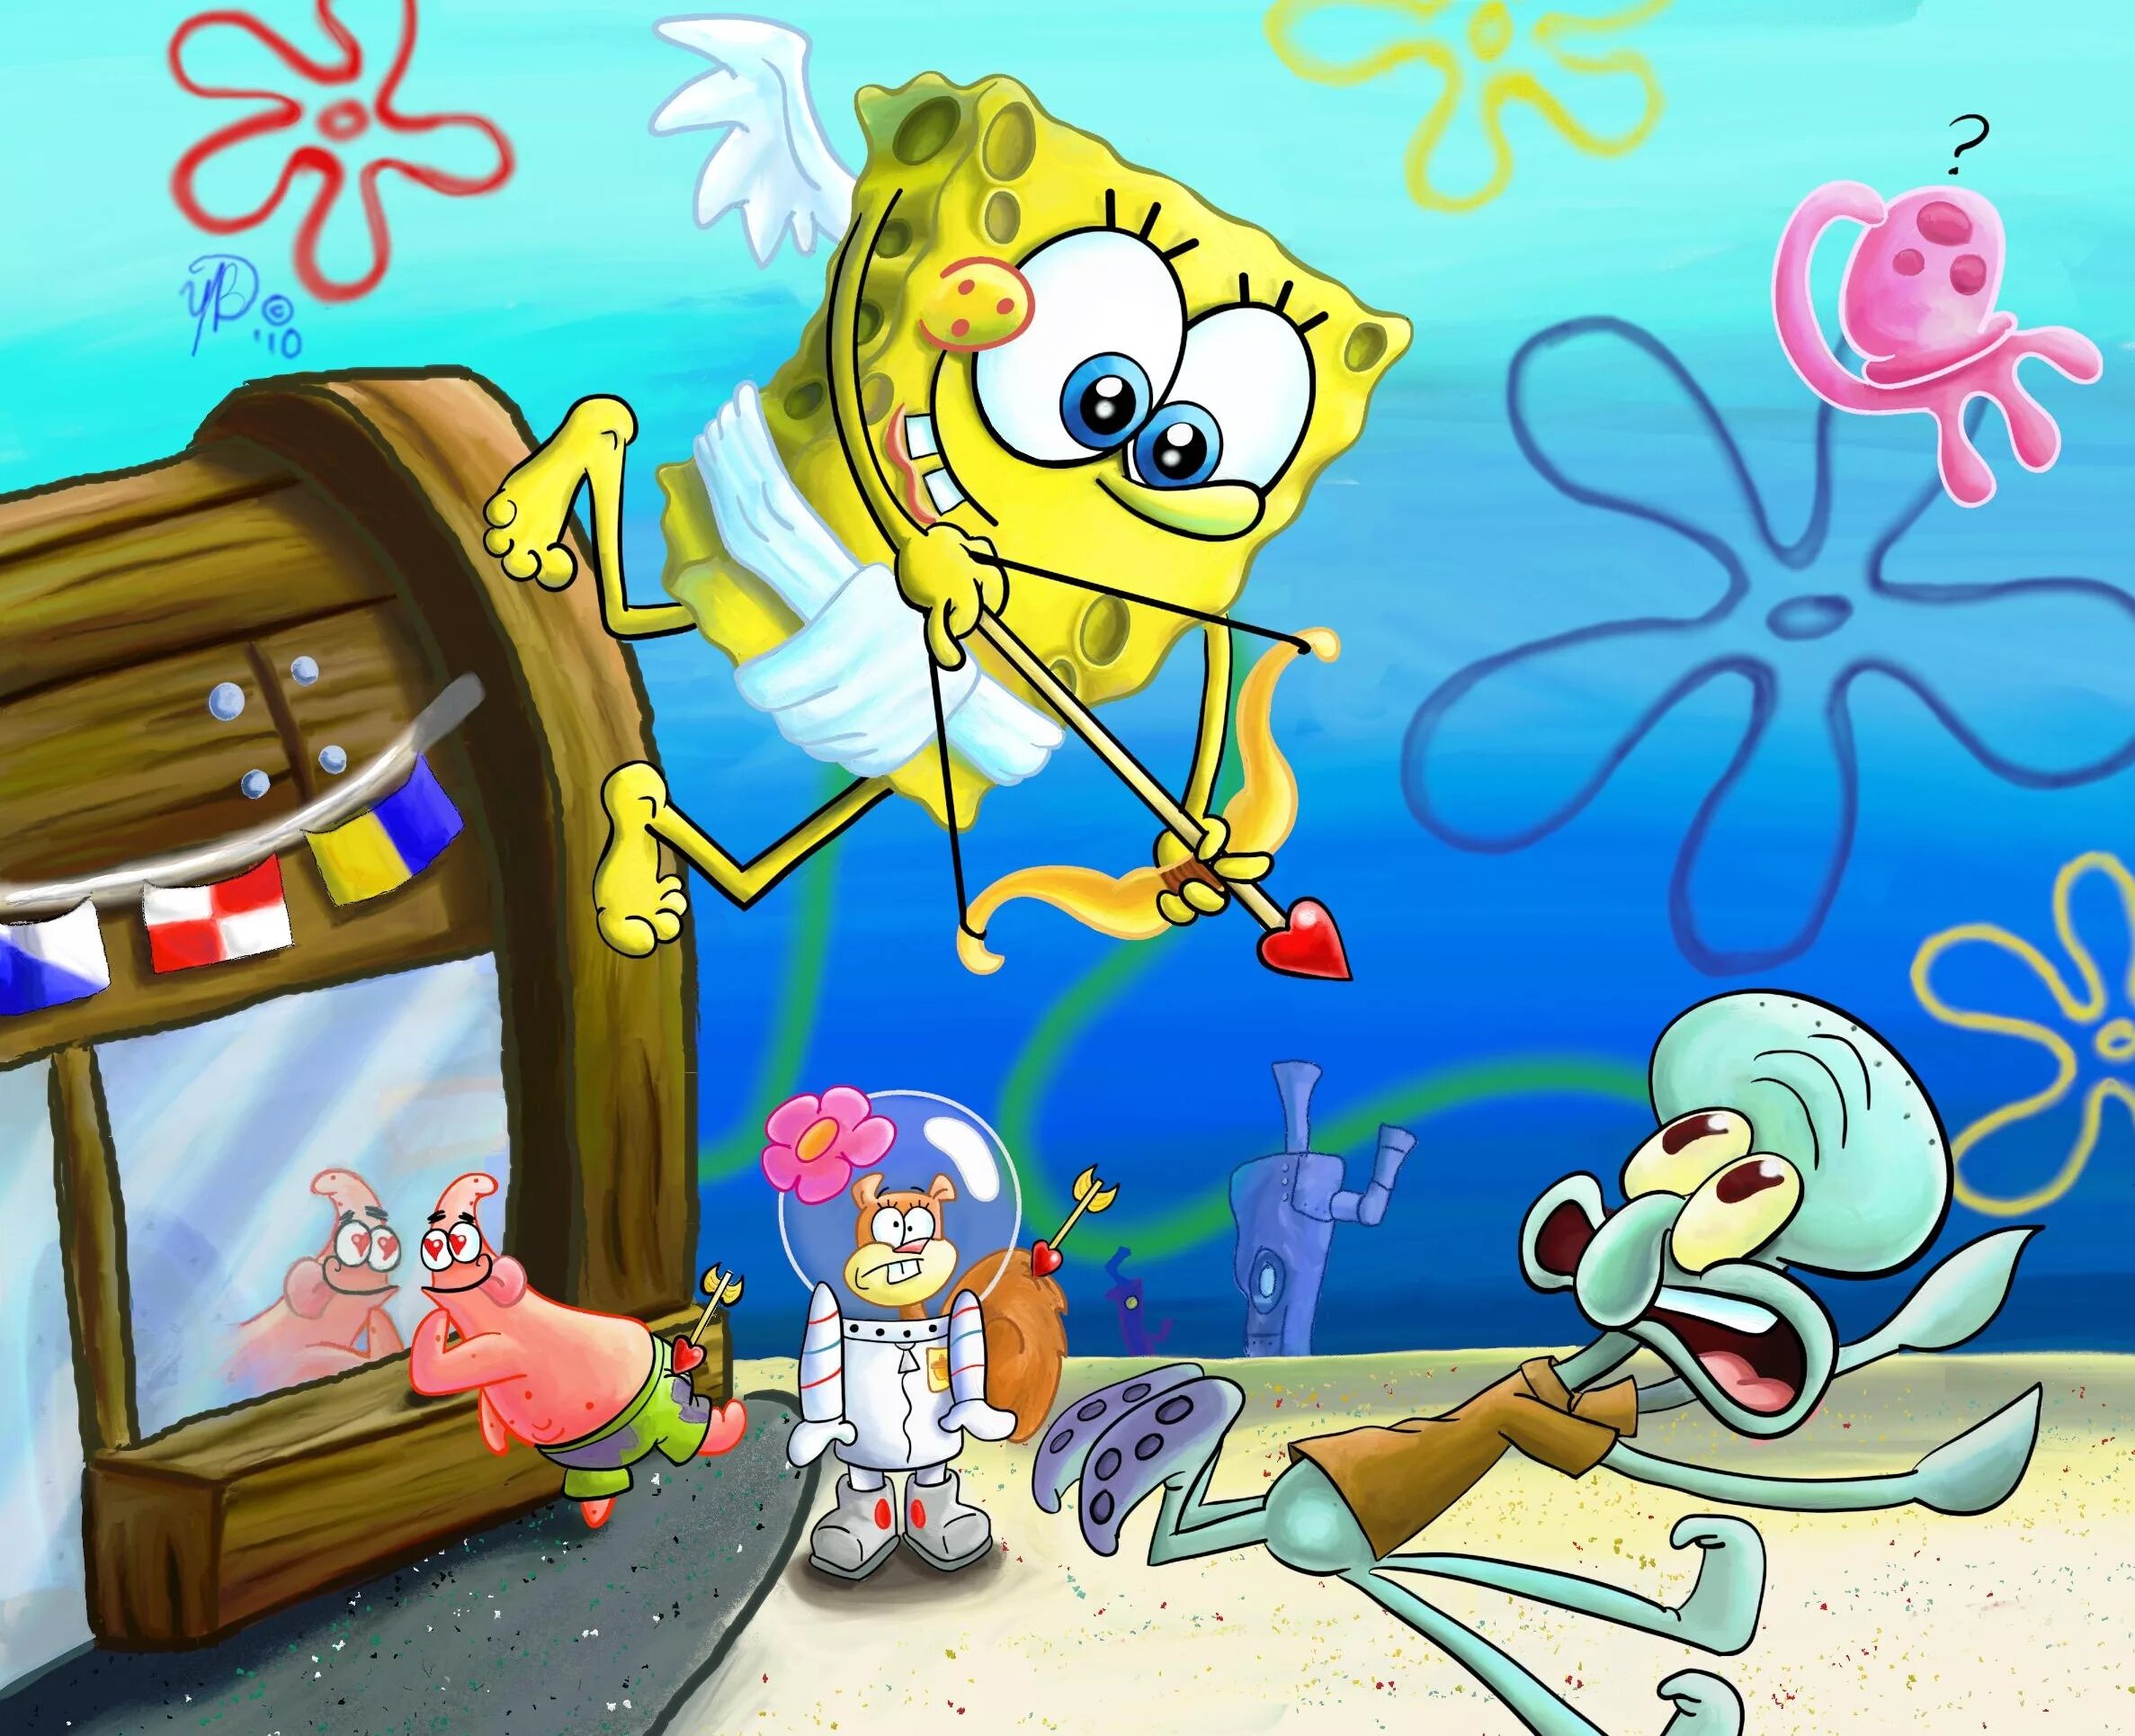 Spongebob sandy. Спанч Боб Спанч Боб. Губка Боб Сквидвард и Сэнди. Спанч Боб и Патрик и Сквидвард и Сэнди. Губка Патрик Сэнди и Сквидвард.